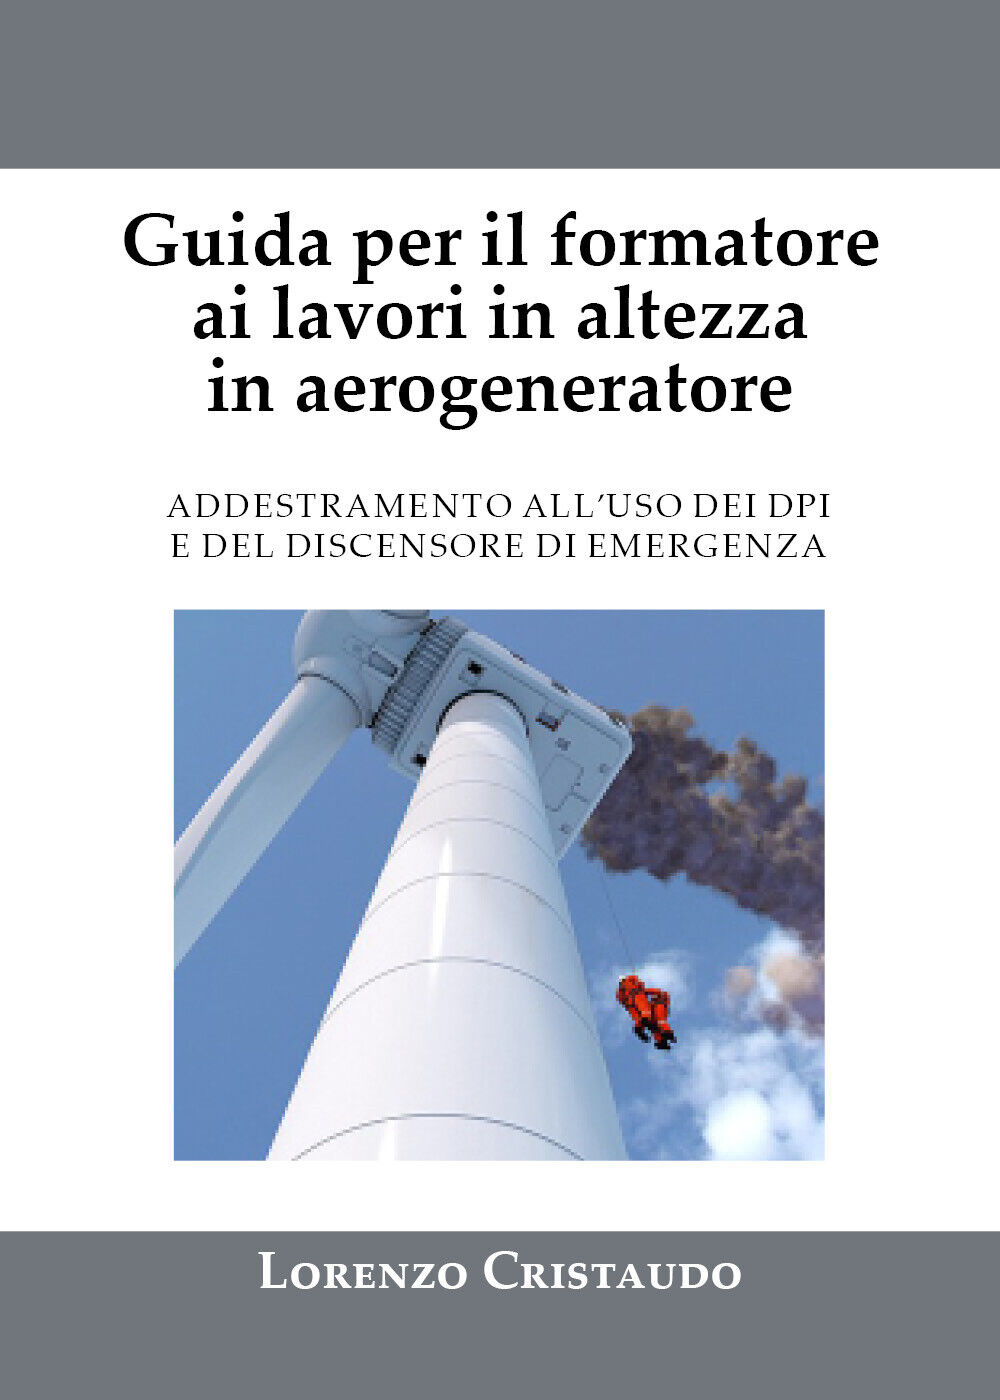 Guida per il formatore ai lavori in altezza in aerogeneratore di Lorenzo Cristau